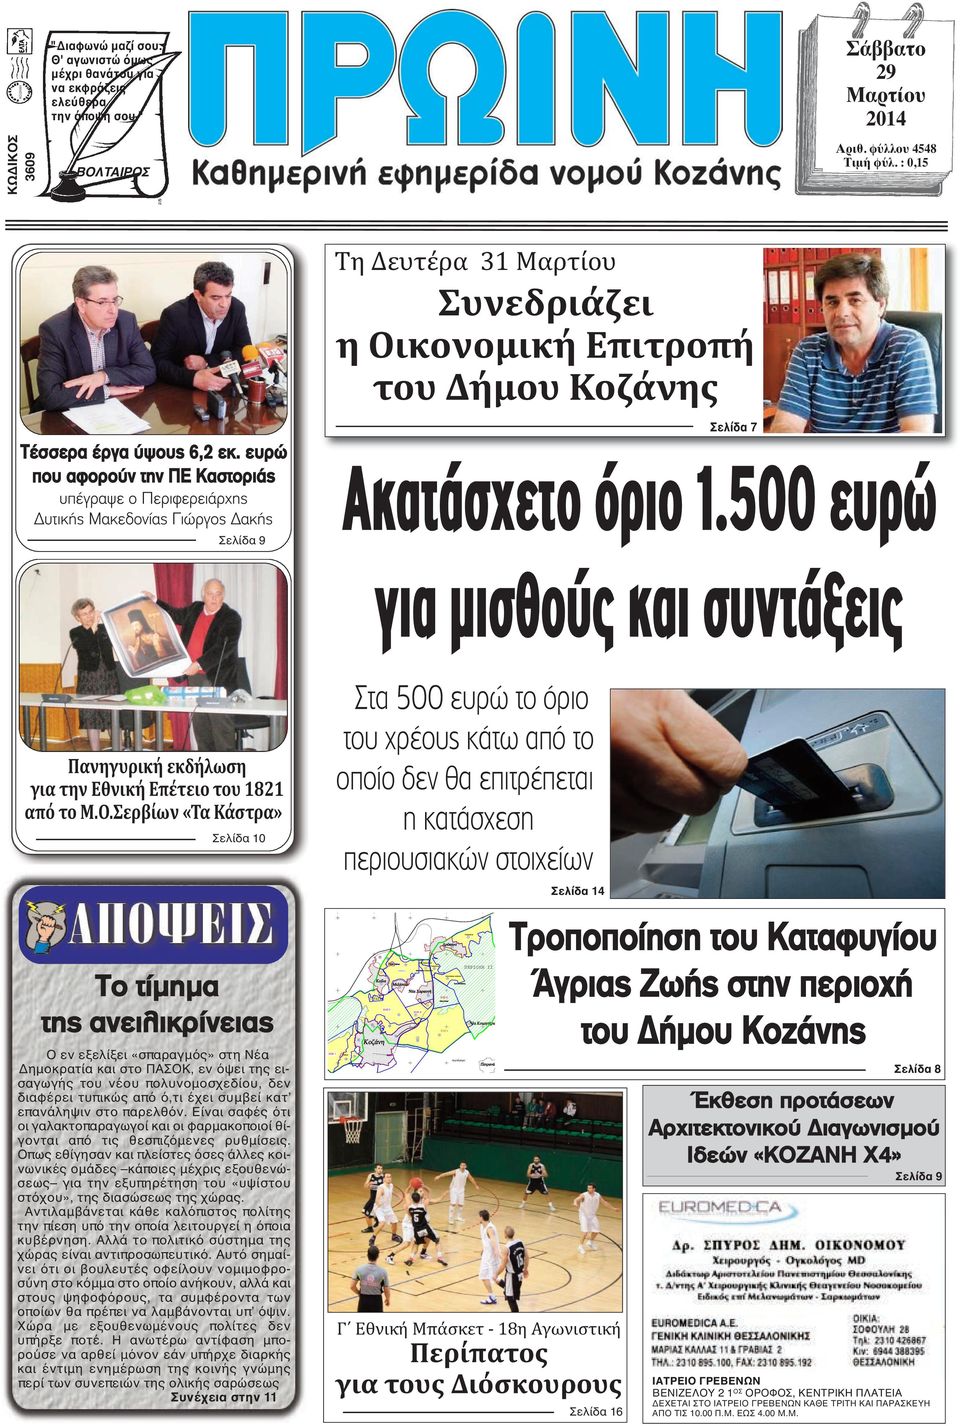 ευρώ που αφορούν την ΠΕ Καστοριάς υπέγραψε ο Περιφερειάρχης Δυτικής Μακεδονίας Γιώργος Δακής Σελίδα 9 Τη Δευτέρα 31 Μαρτίου Συνεδριάζει η Οικονομική Επιτροπή του Δήμου Κοζάνης Σελίδα 7 Ακατάσχετο